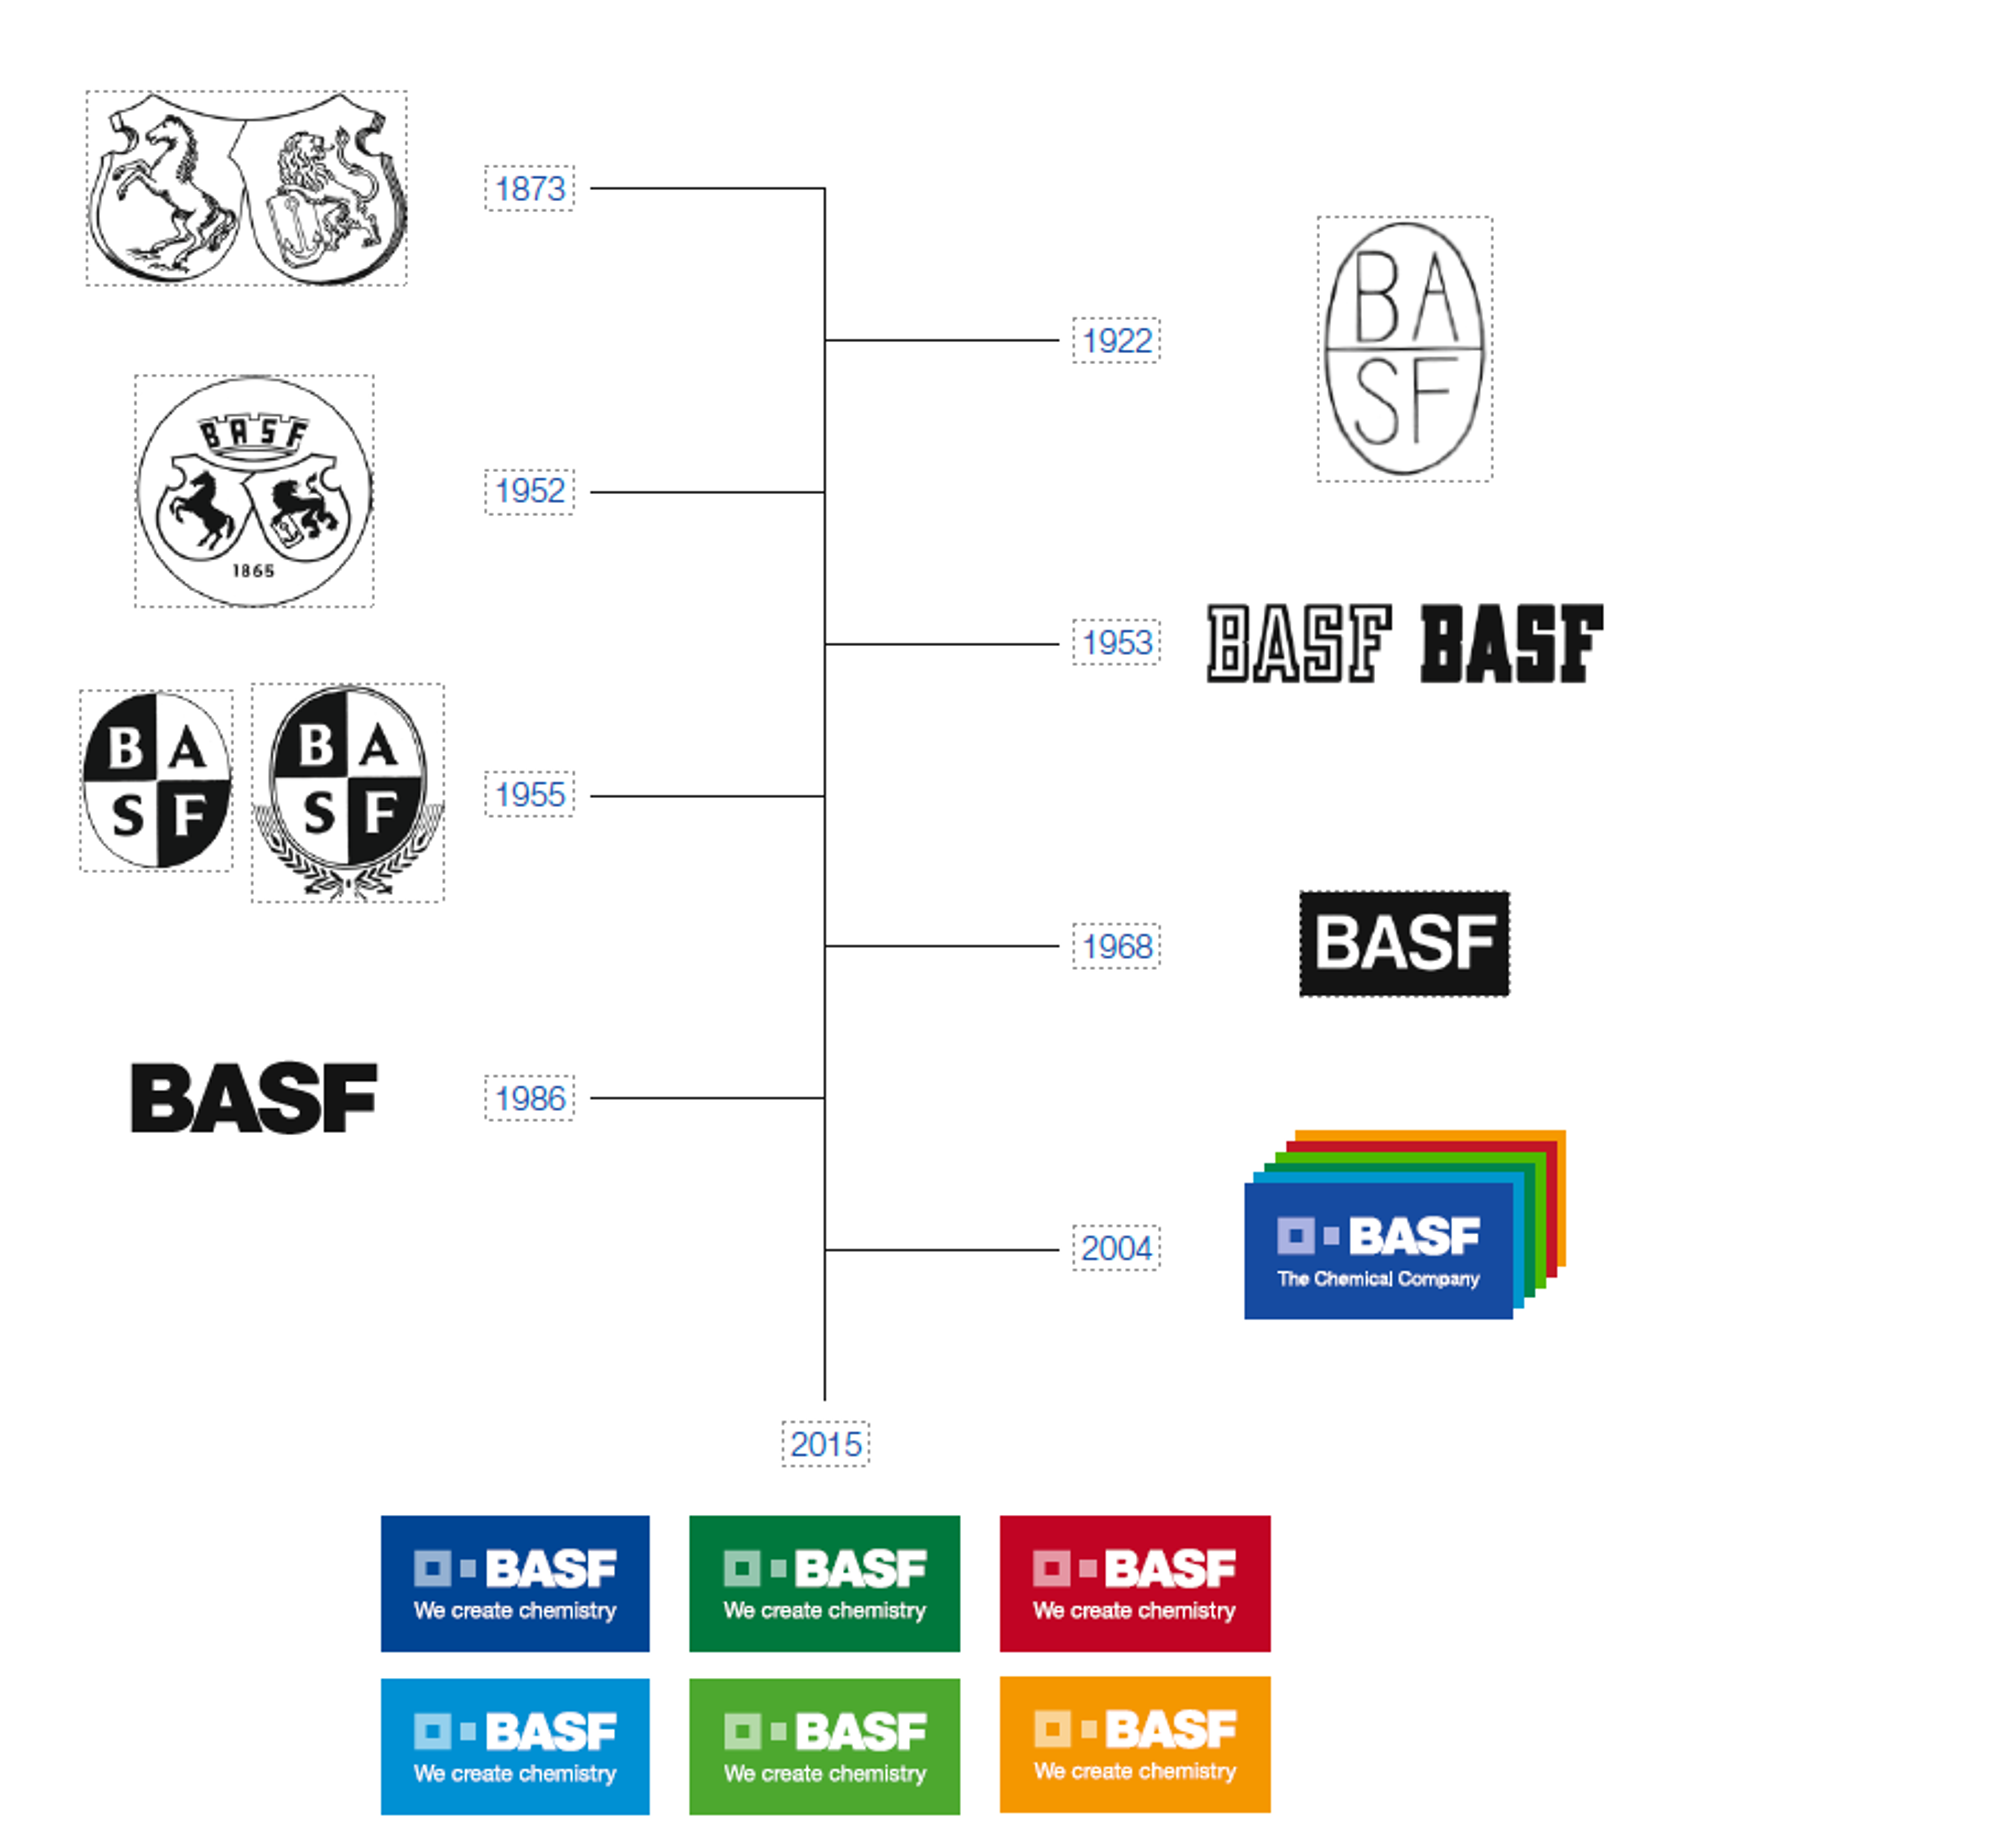 svislá časová přímka s různými logy společnosti BASF